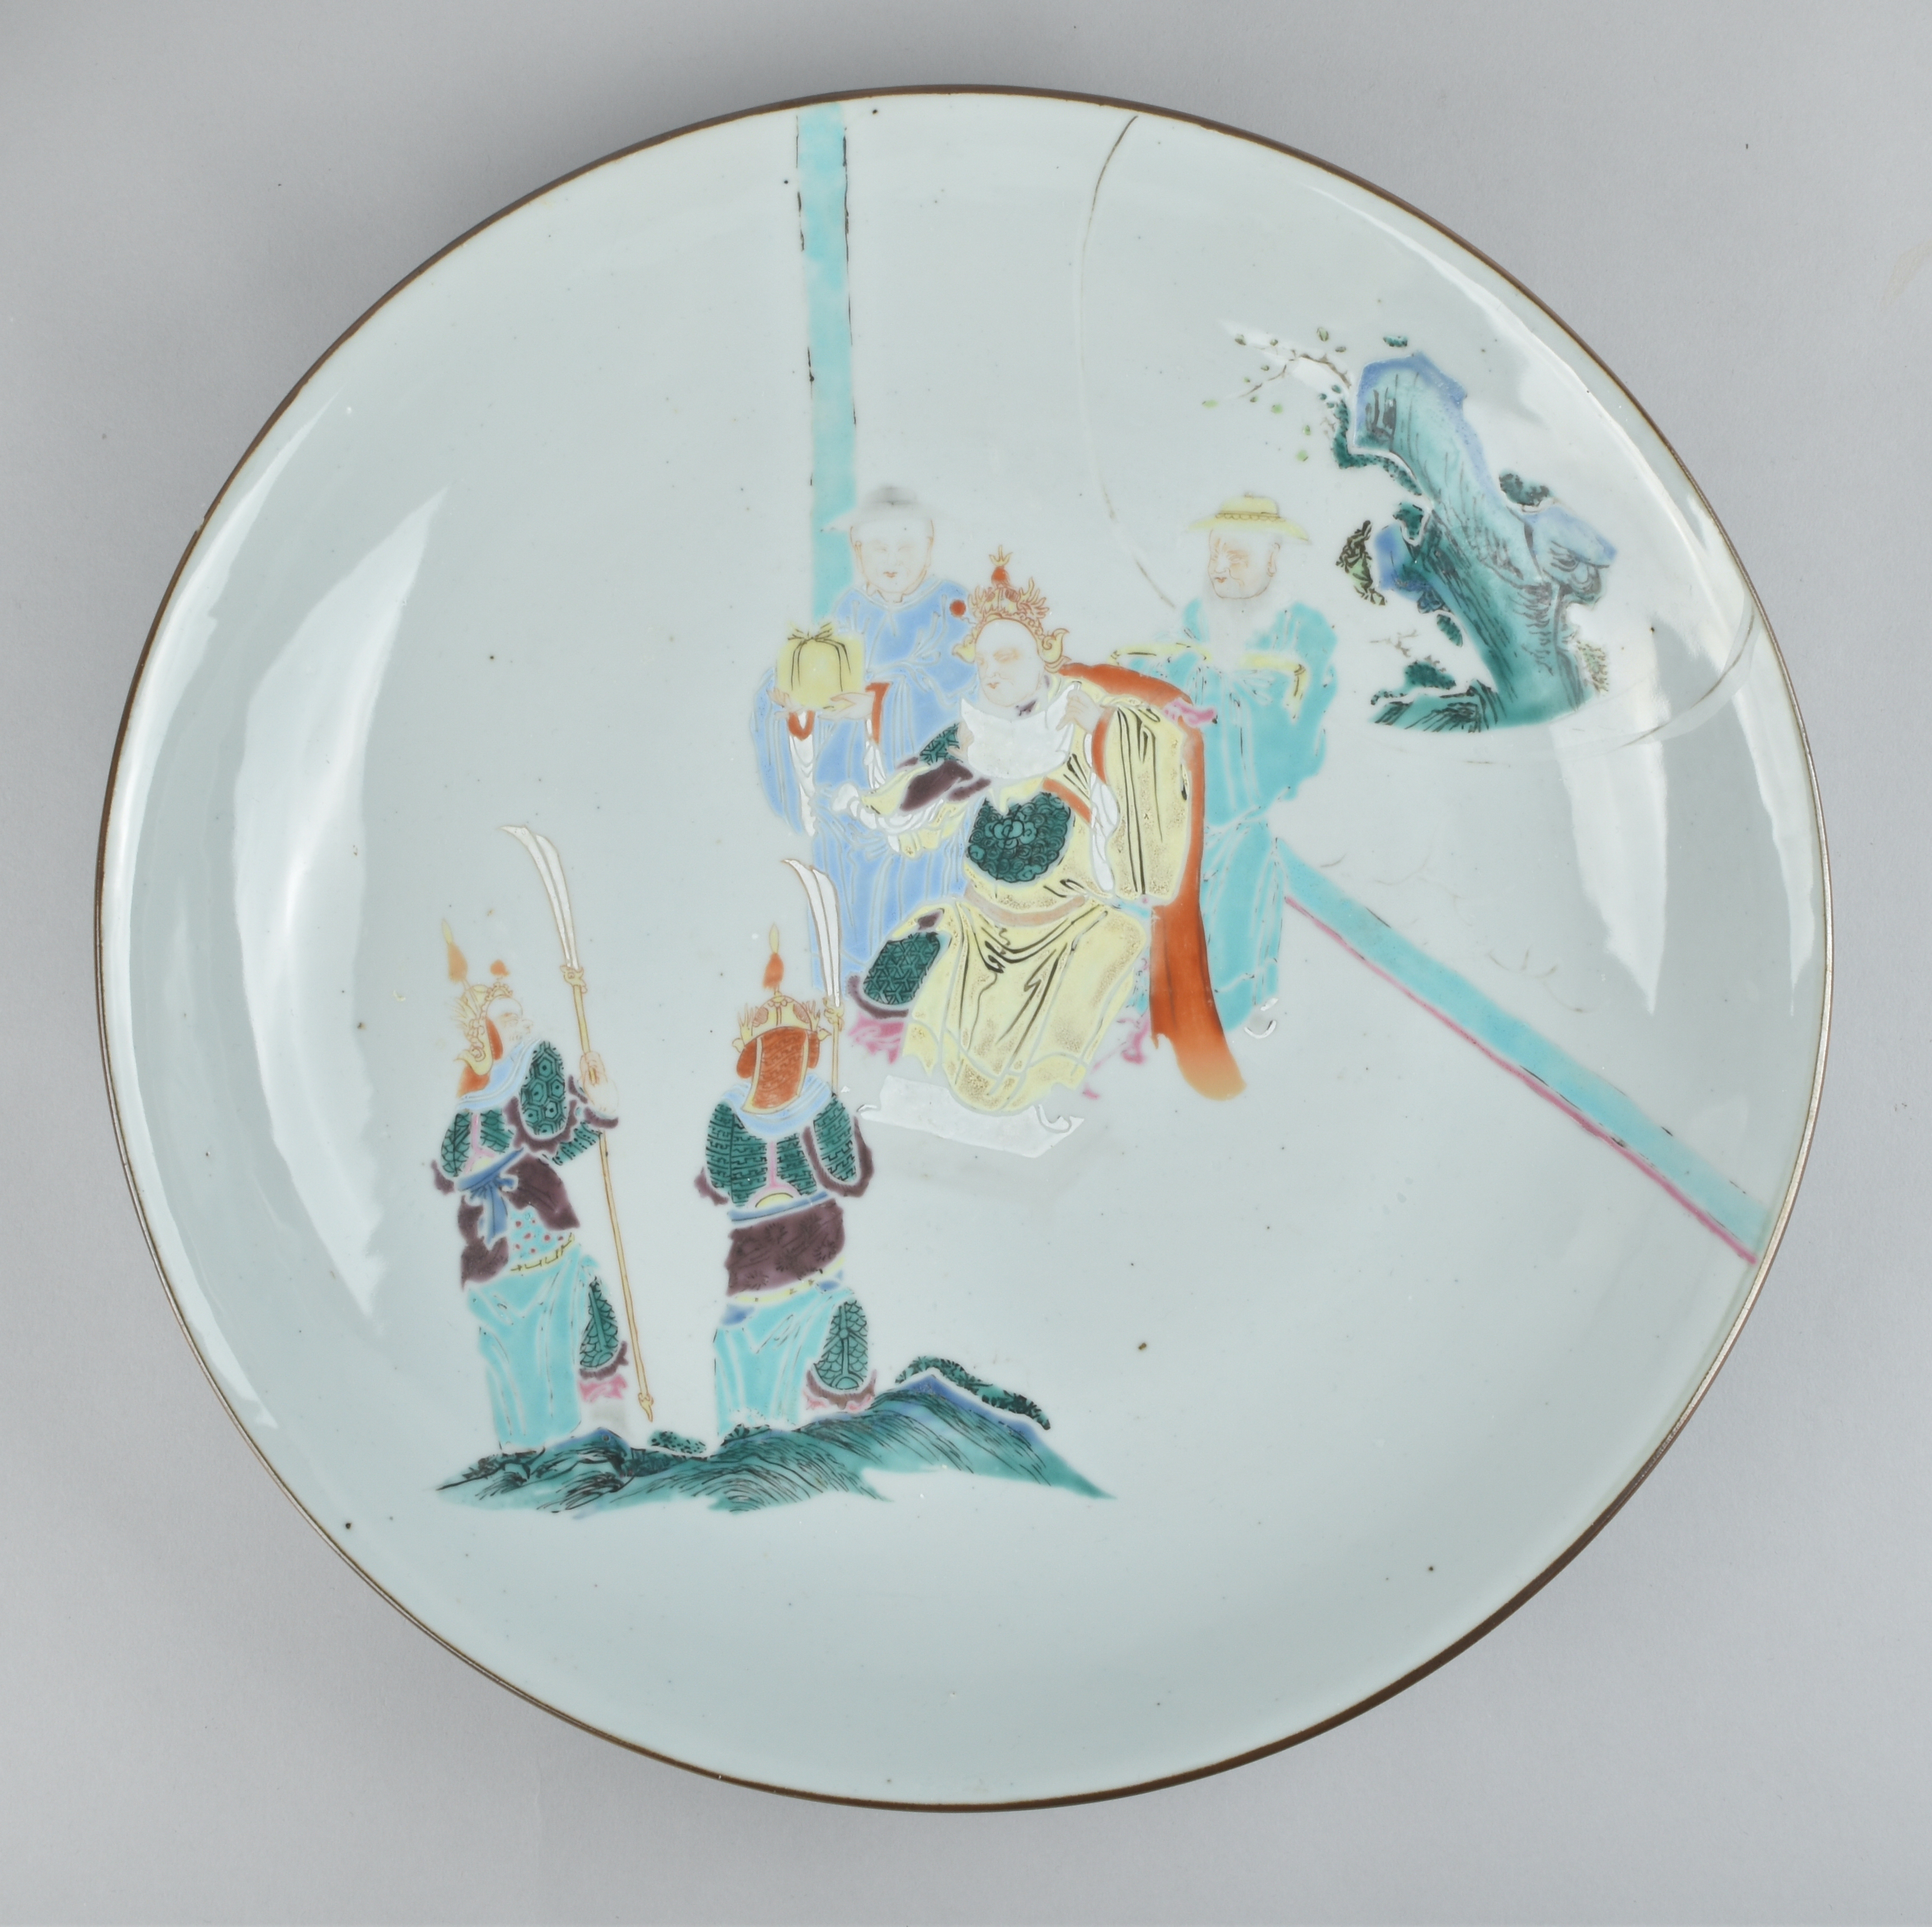 Porcelaine Yongzheng (1723-1735) / Qianlong (1736-1795), ca. 1730/40, Chine